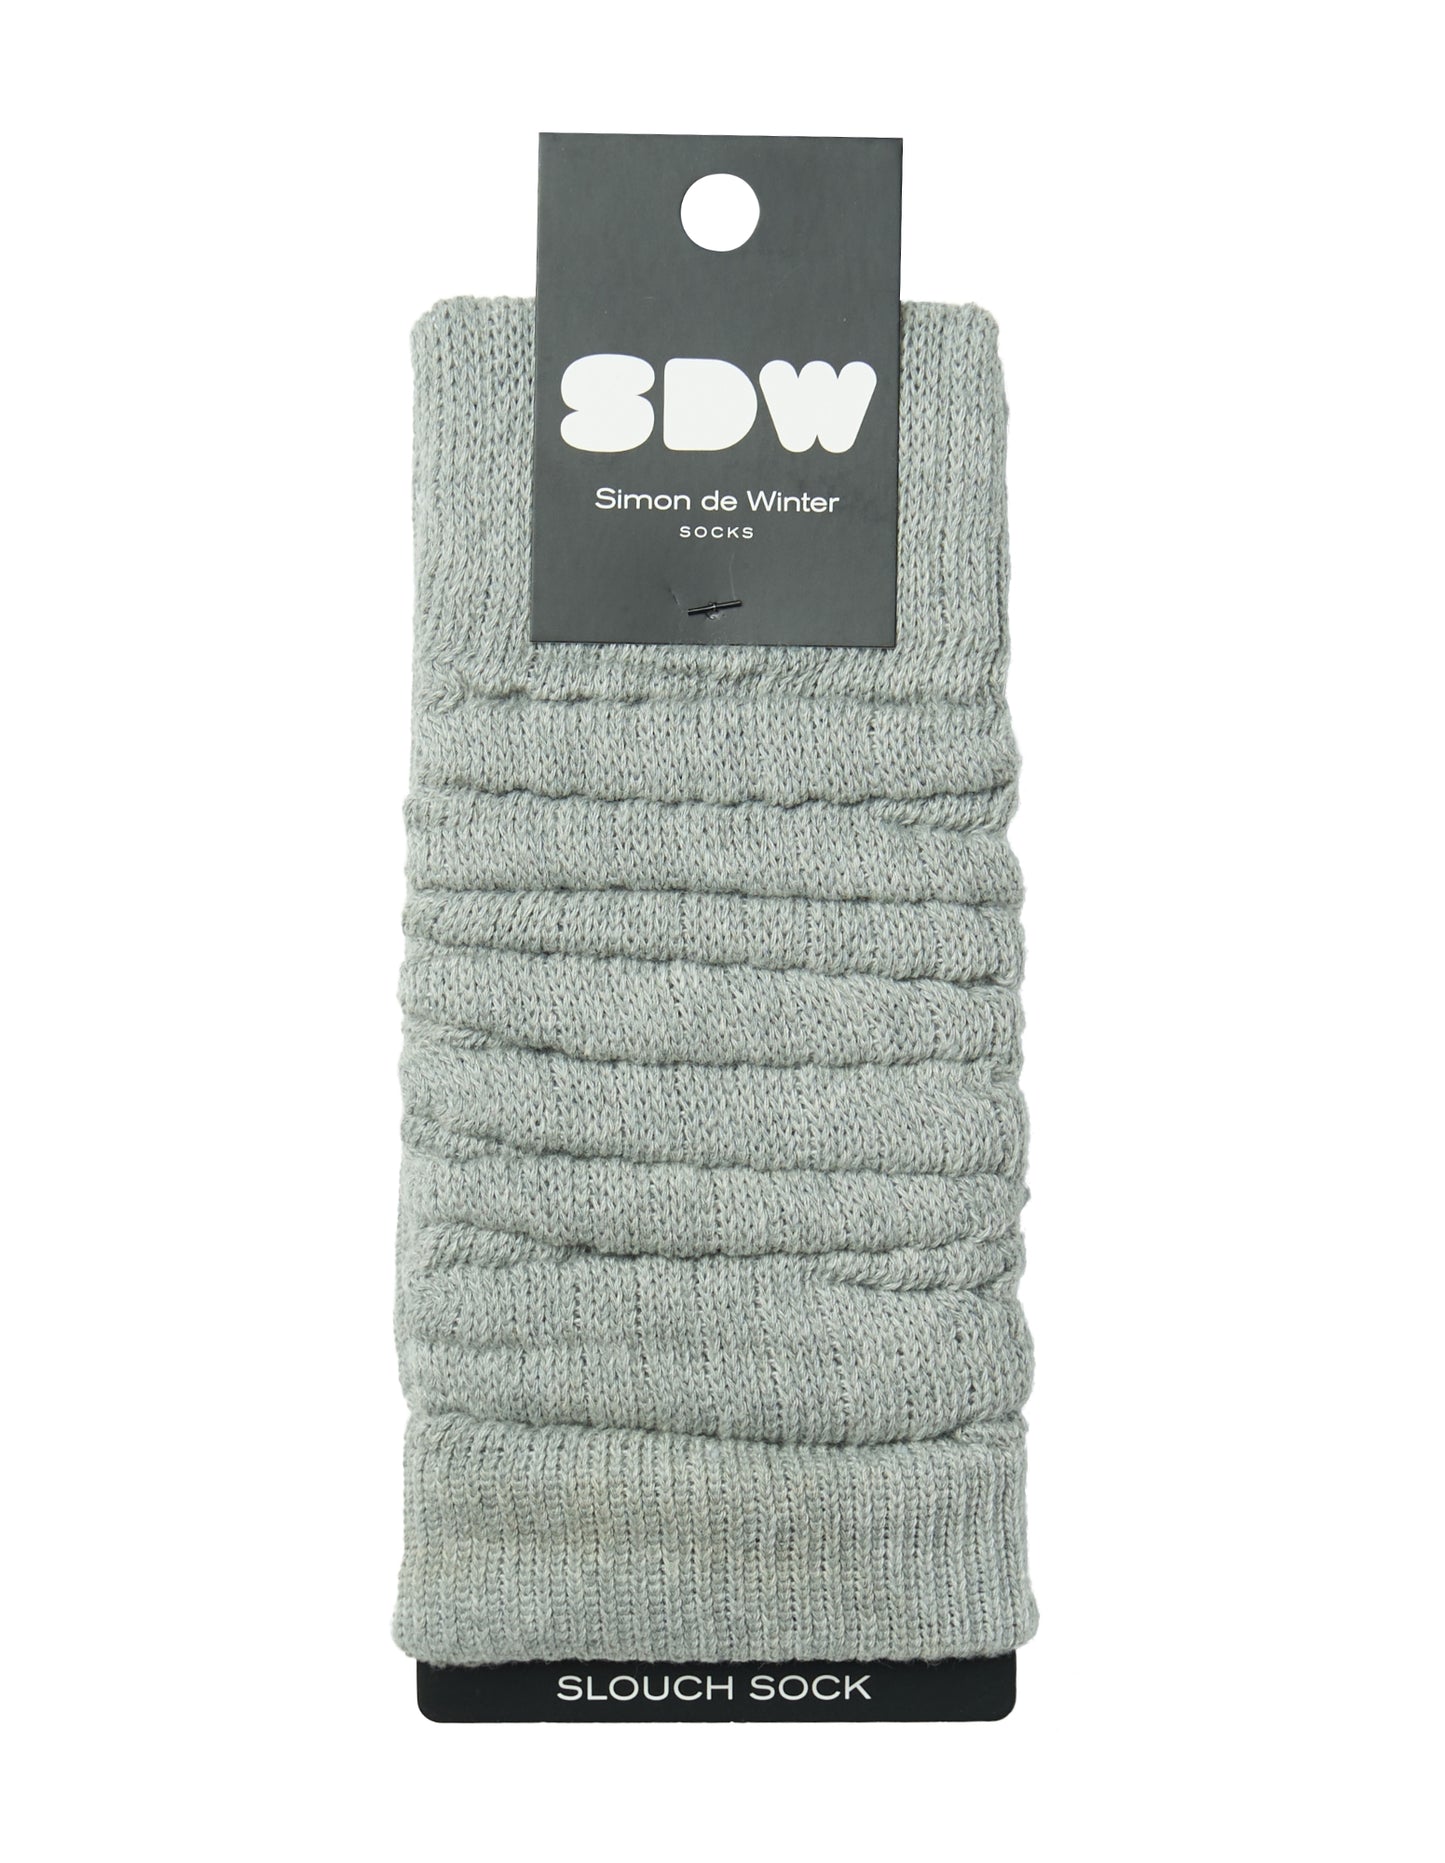 Simon de Winter Women's Slouch Socks in Grey Marle